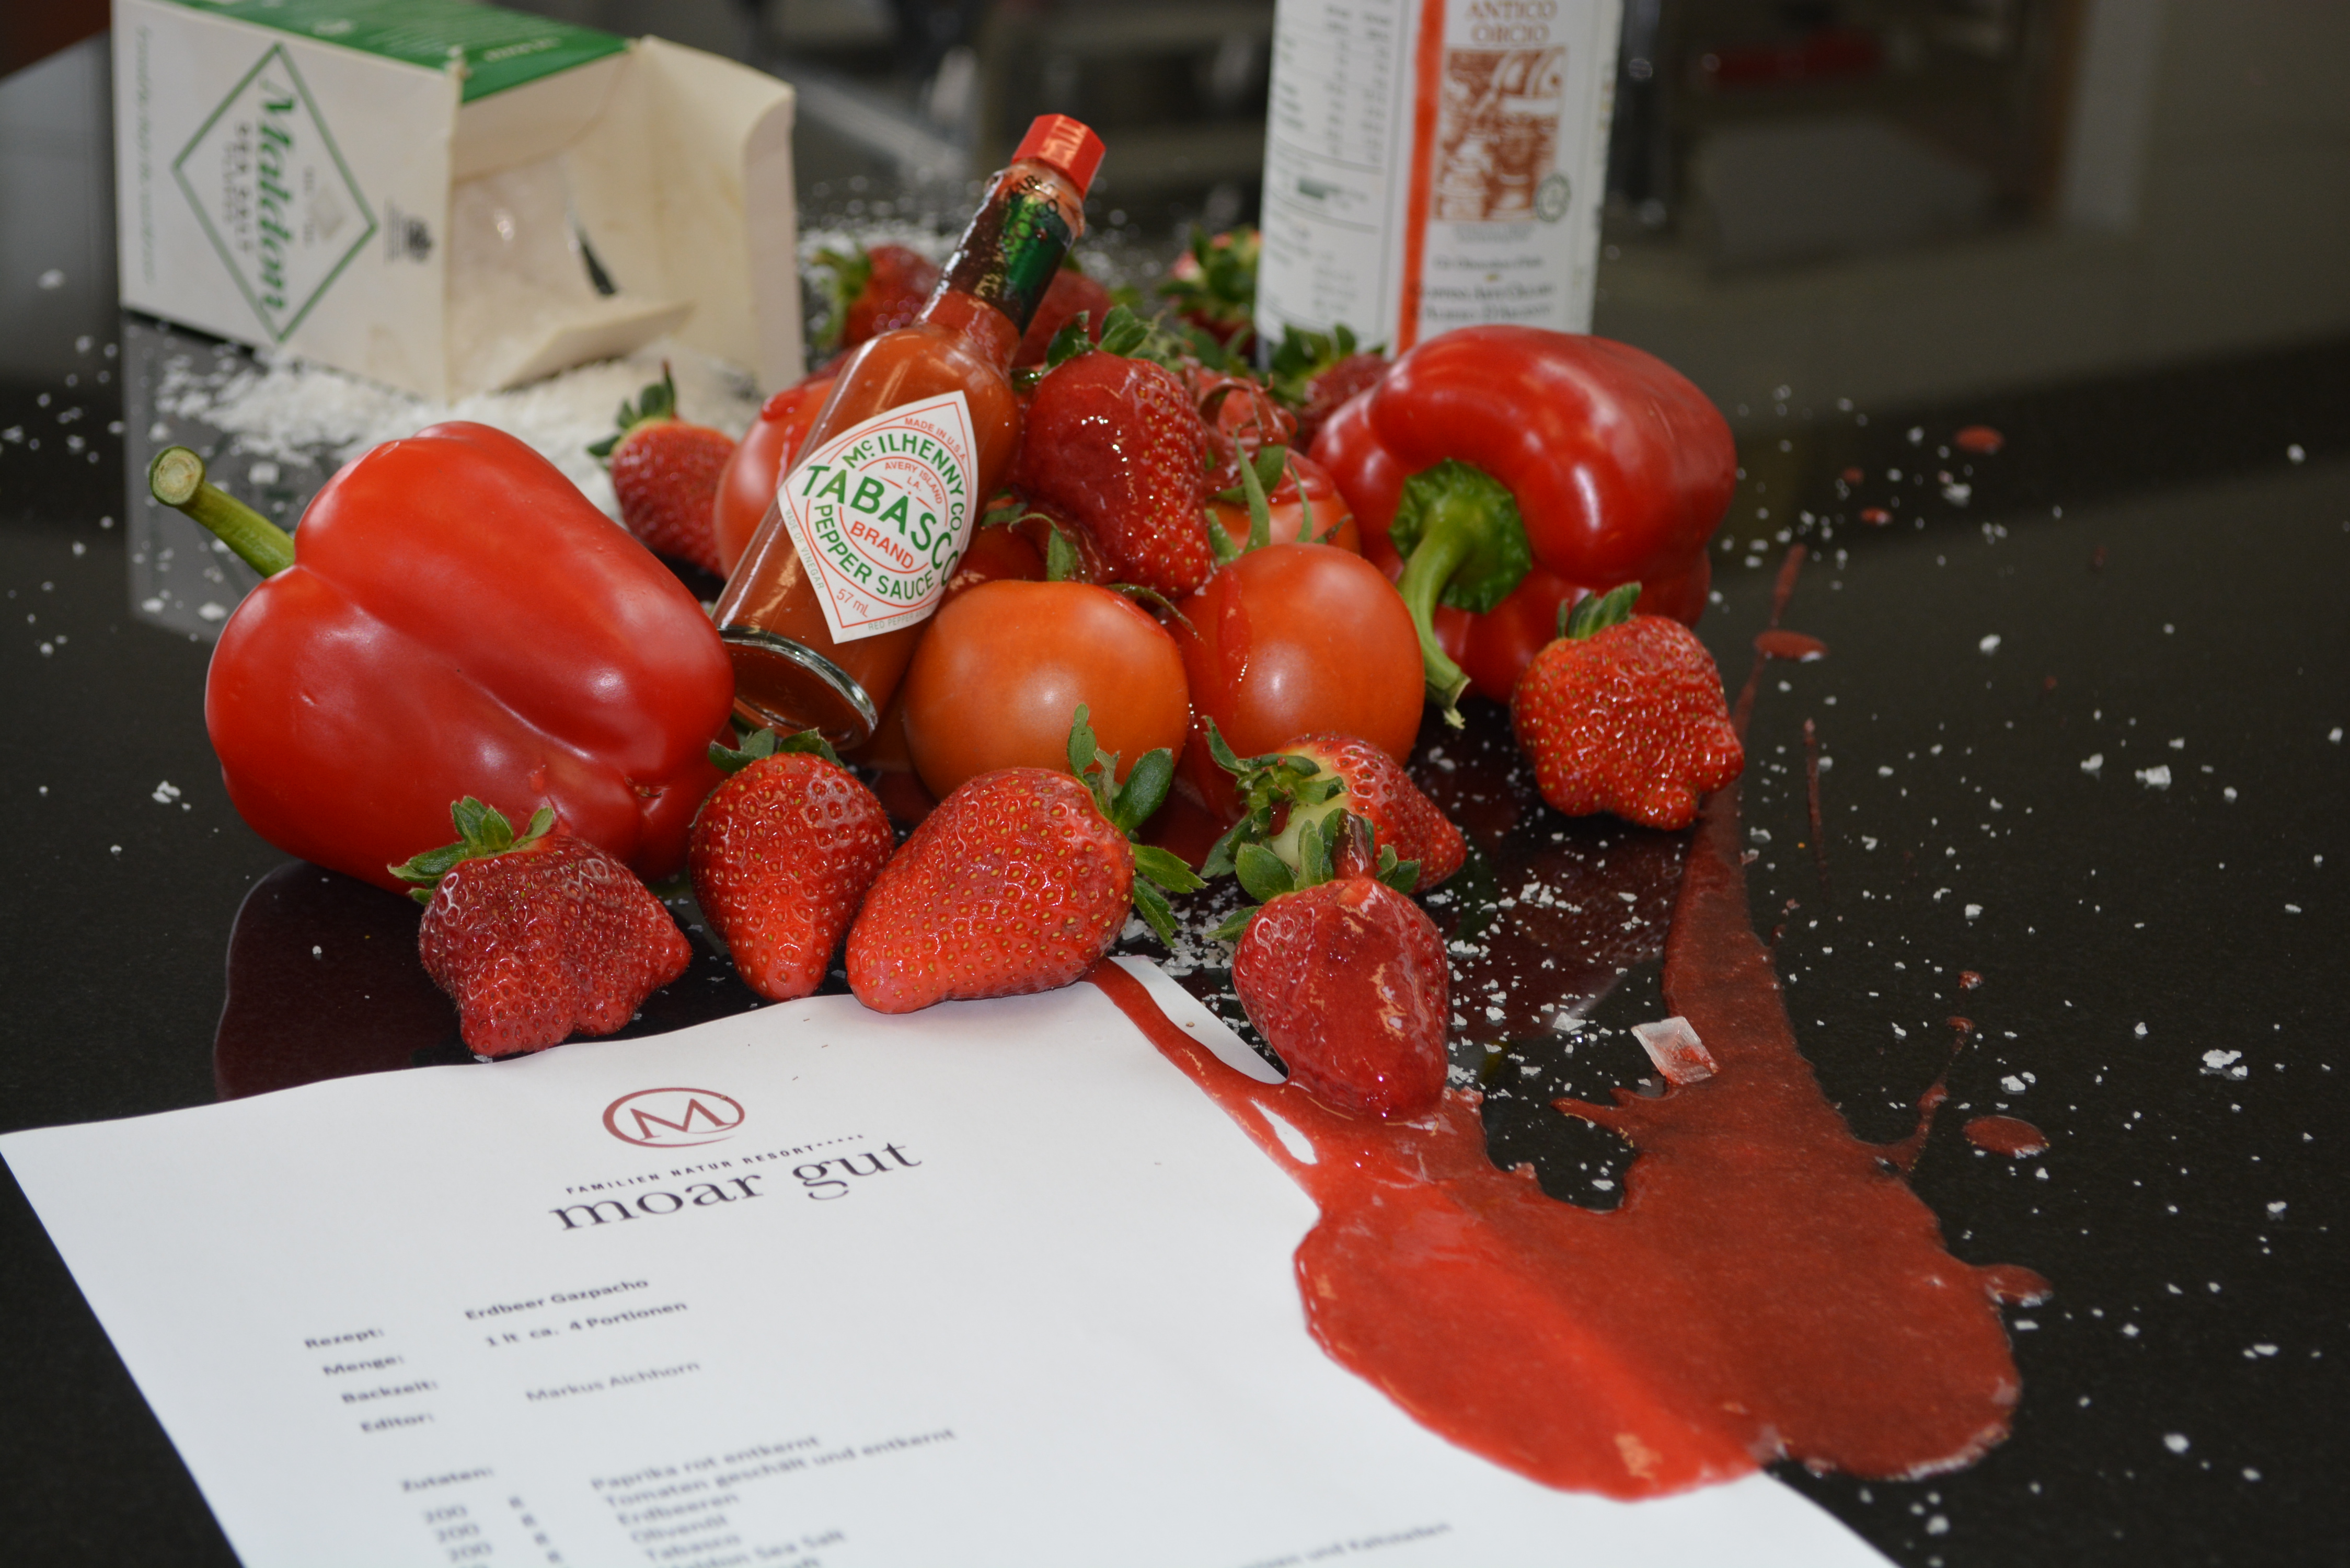 Zubereitung und Rezept für Erdbeer Gazpacho